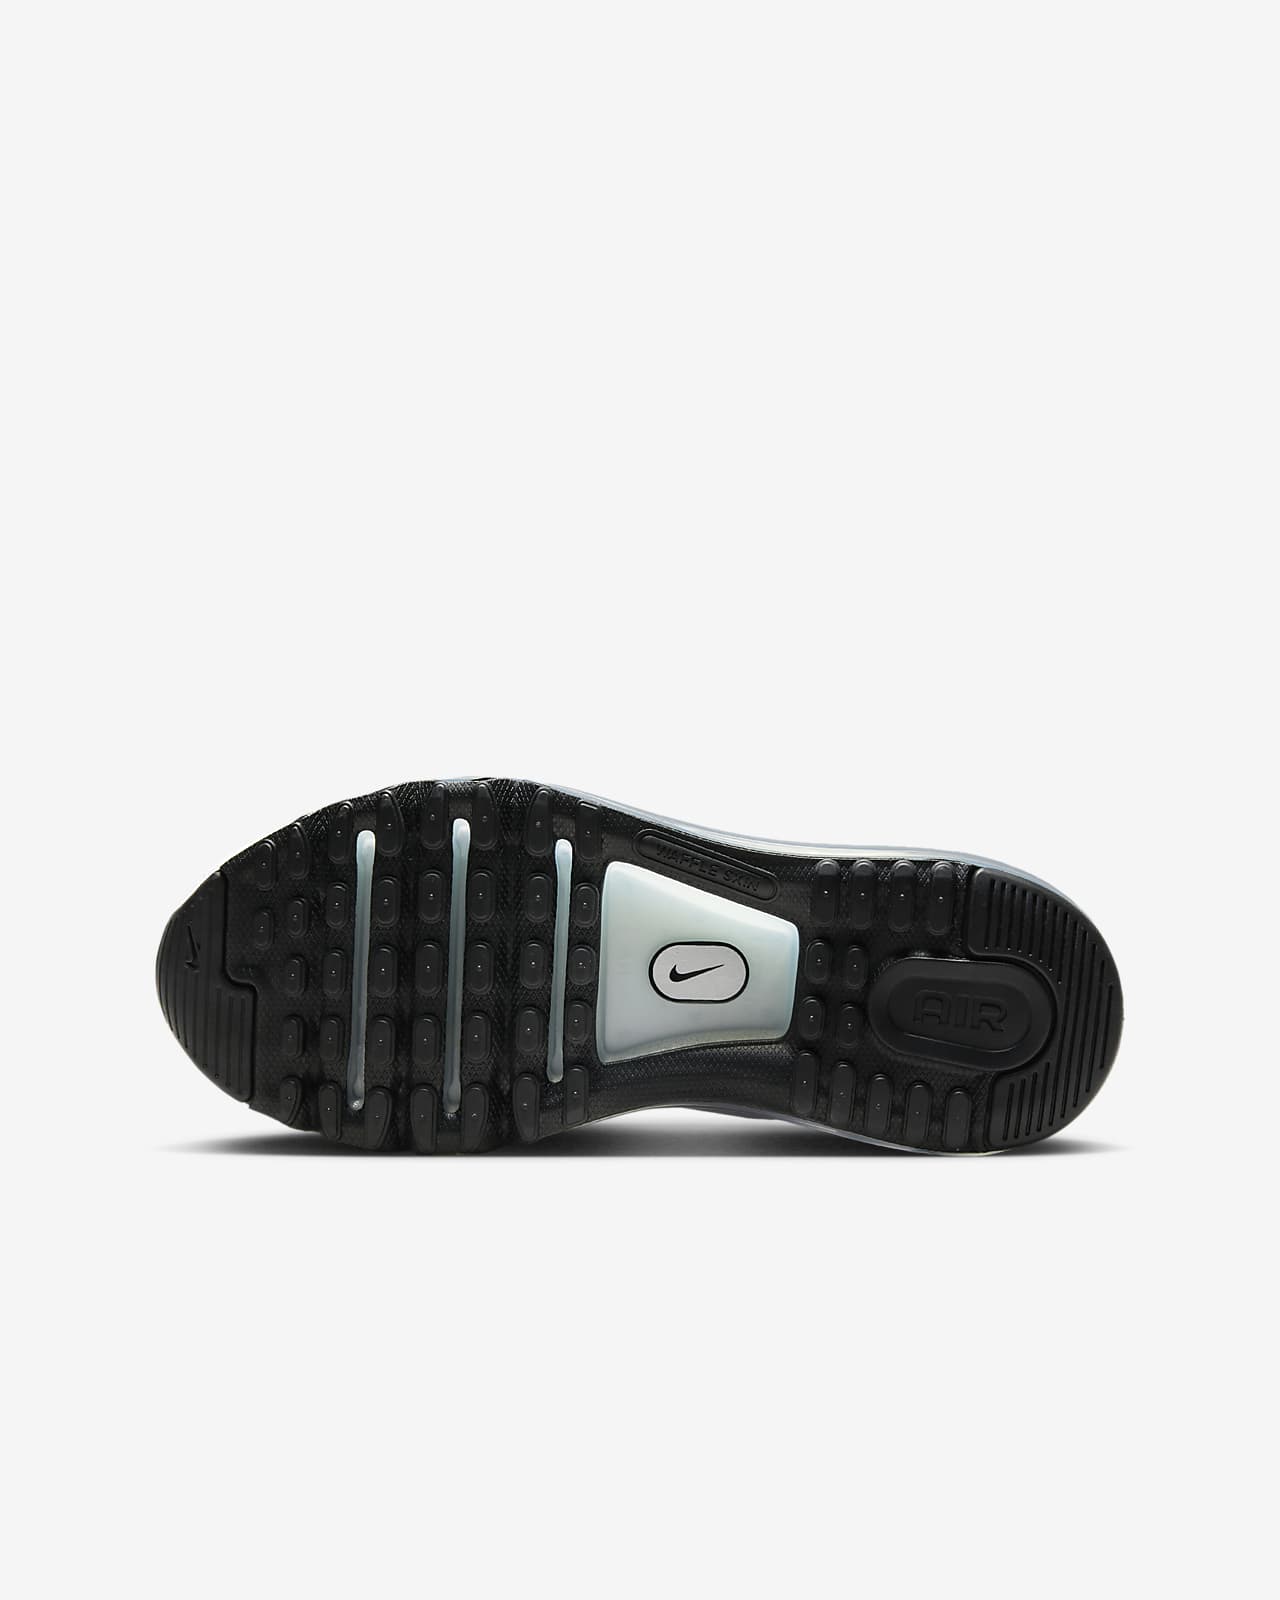 Nike Air Max 2013 Men's Shoes.